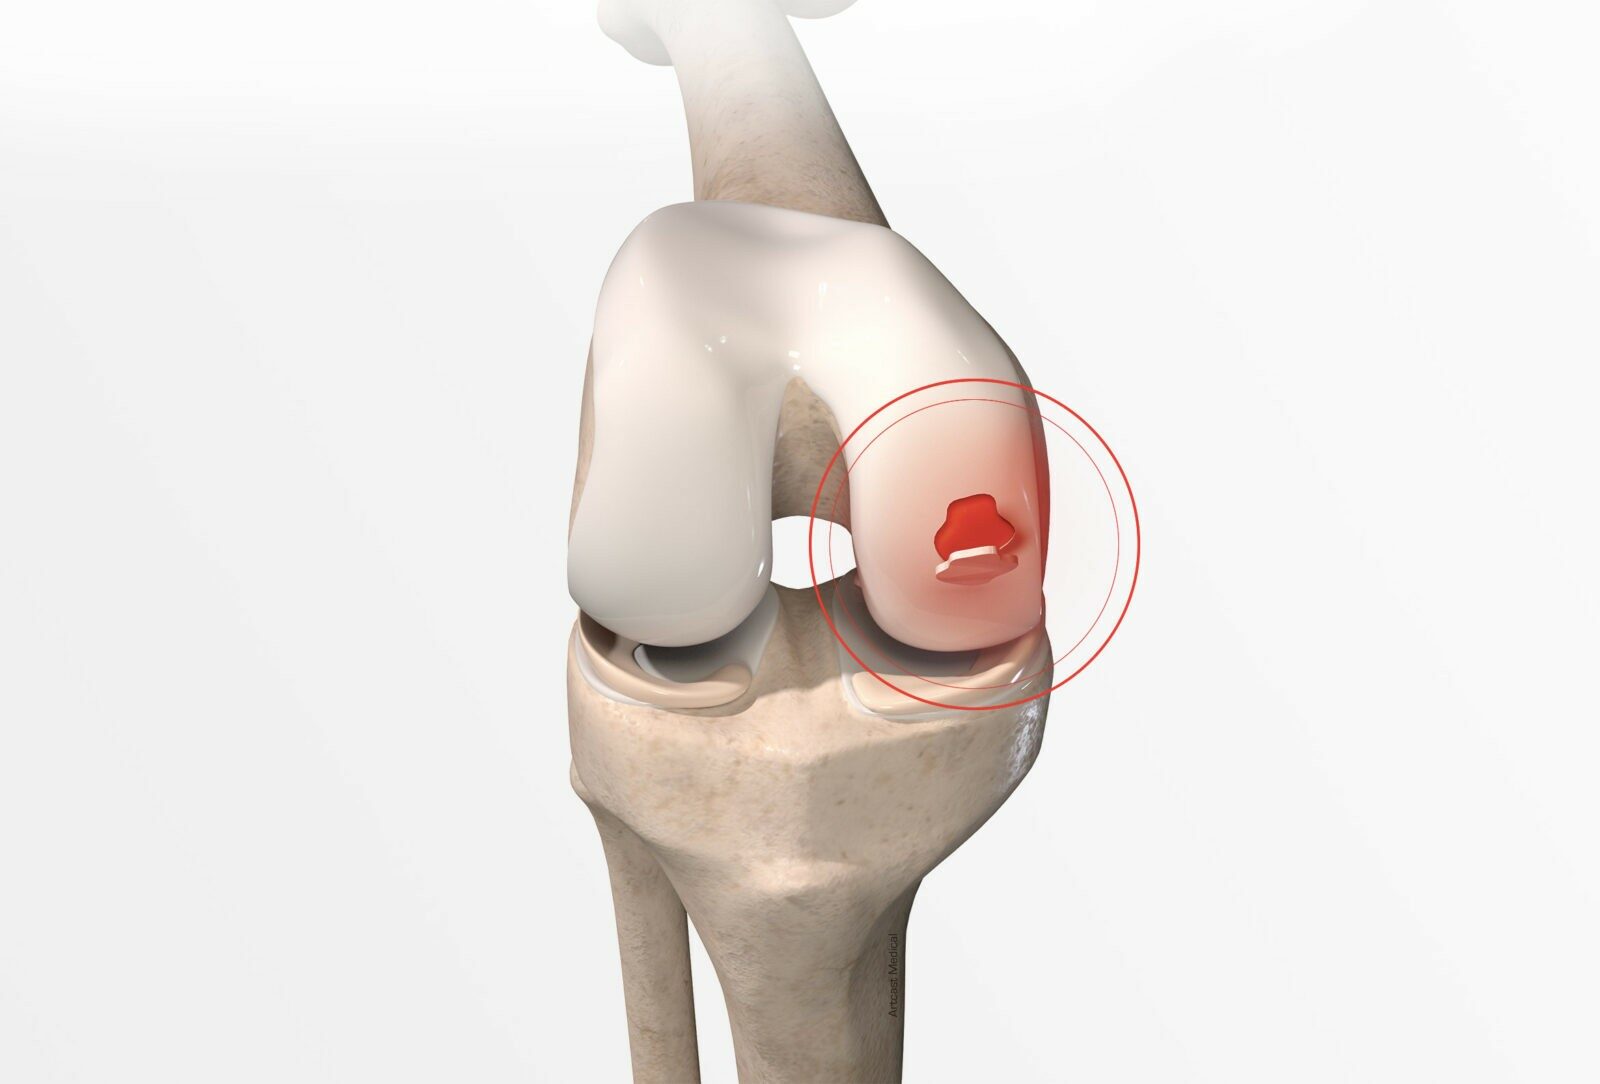 Chirurgie cartilagineuse du genou à Paris par docteur Paillard